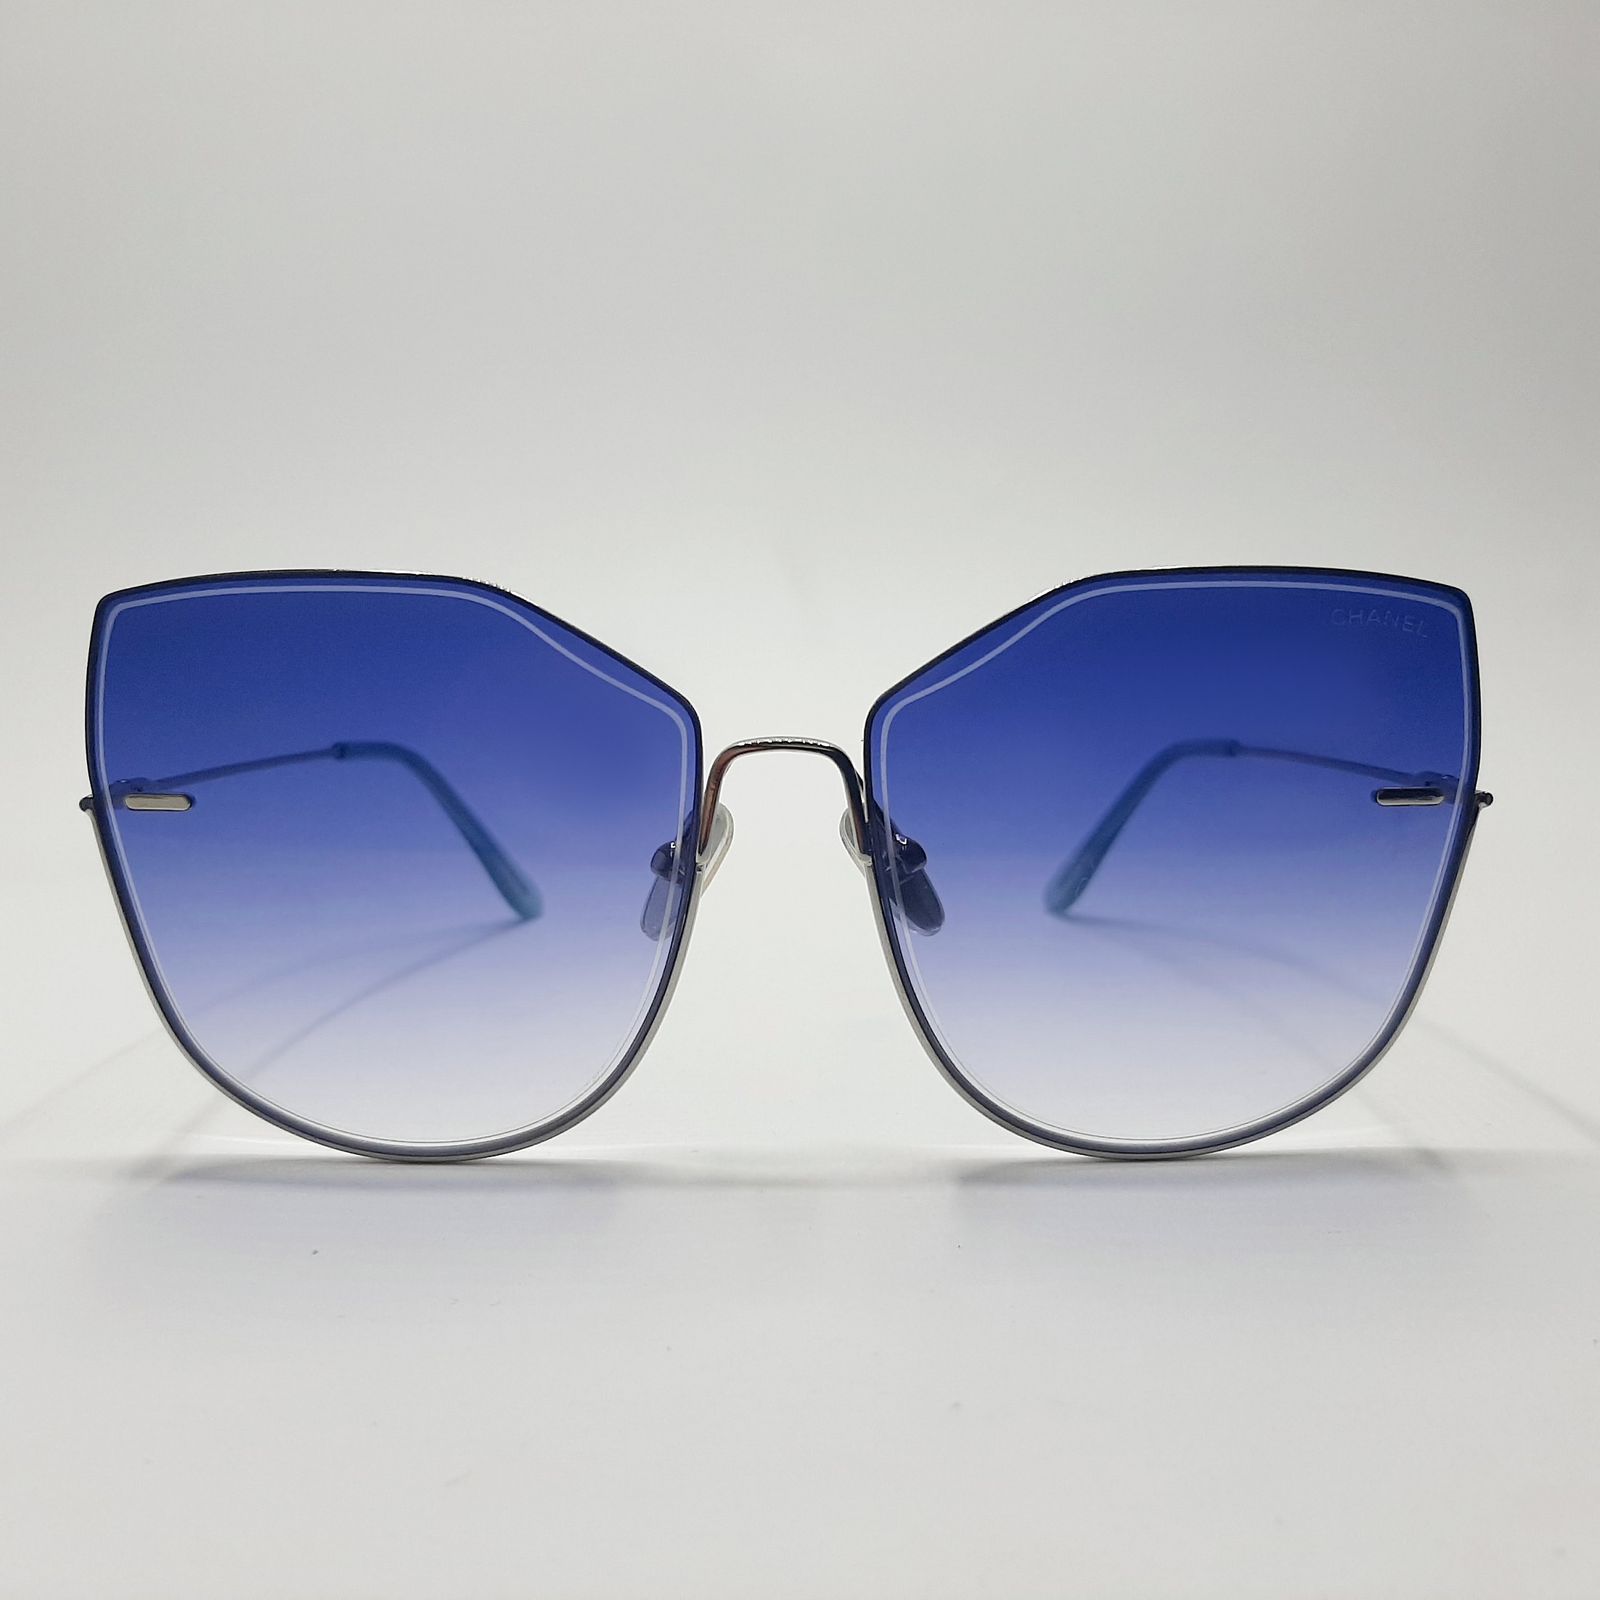 عینک آفتابی مدل S31030c21 -  - 3